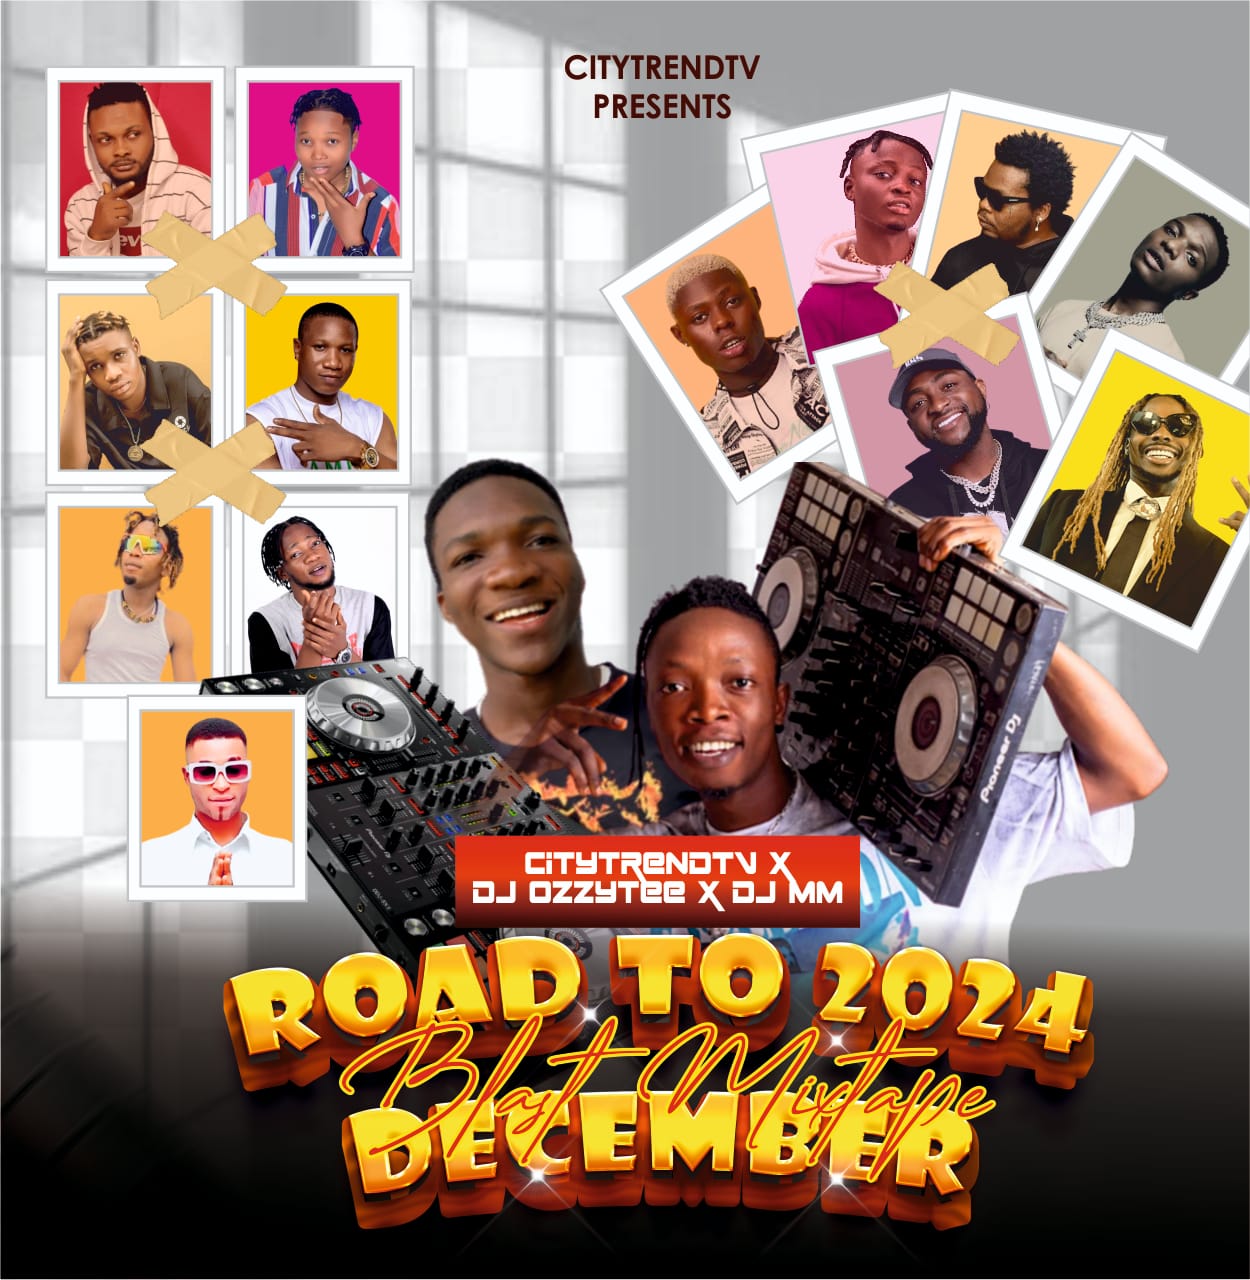 CitytrendTv ft. DJ Ozzytee DJ MM Road To 2024 December Blast